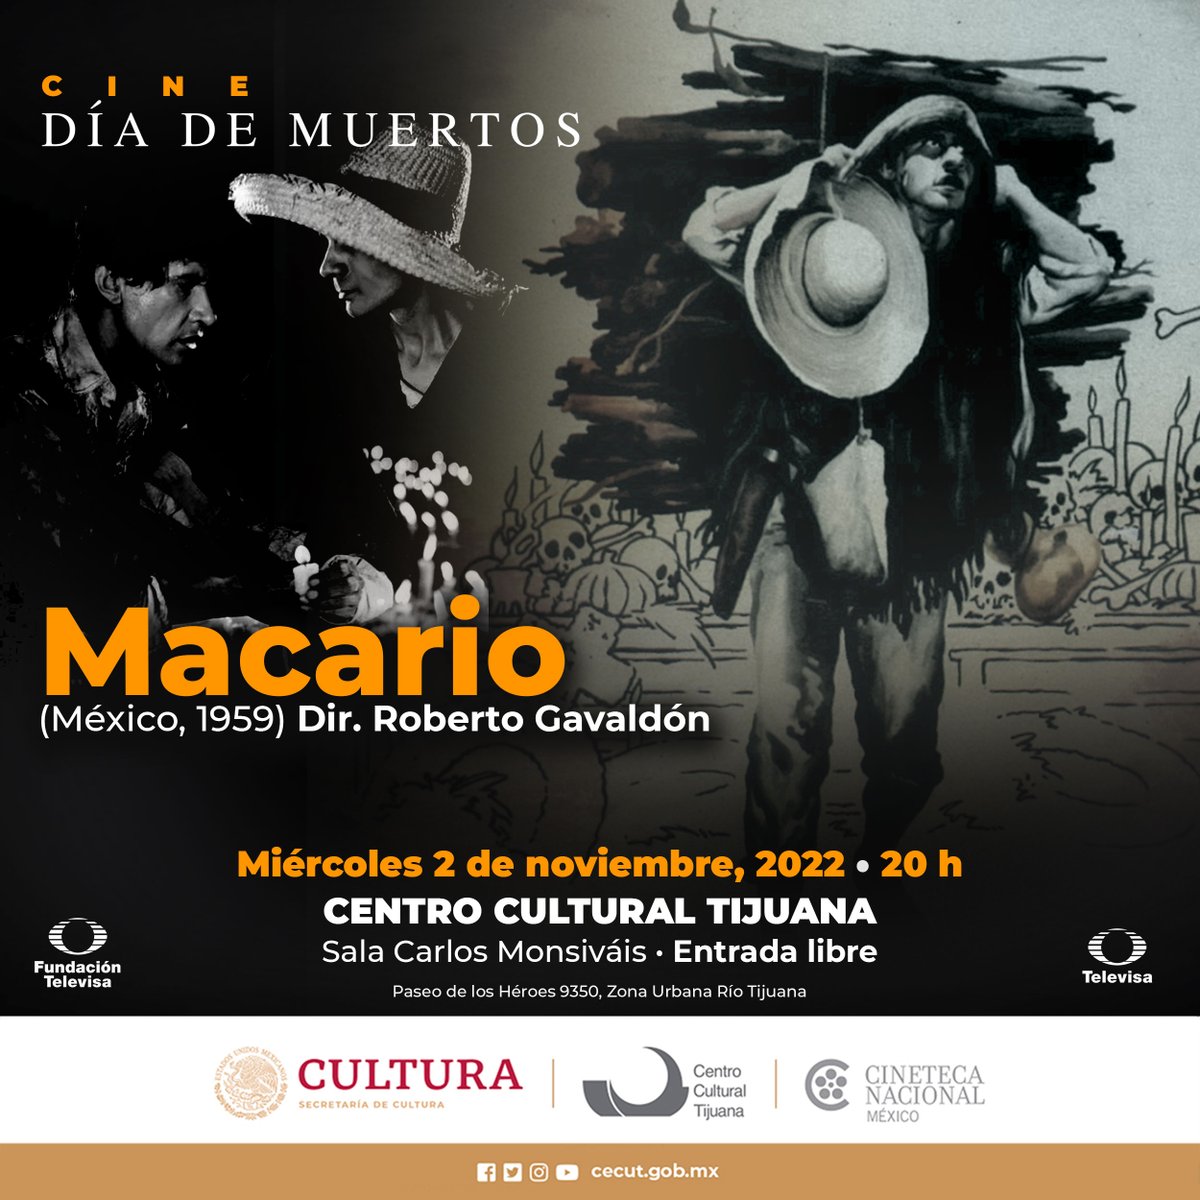 ¡Amigas y amigos de Tijuana, el día de MAÑANA en el @cecut_mx se exhibirá el clásico mexicano MACARIO! Info. en la imagen 👇